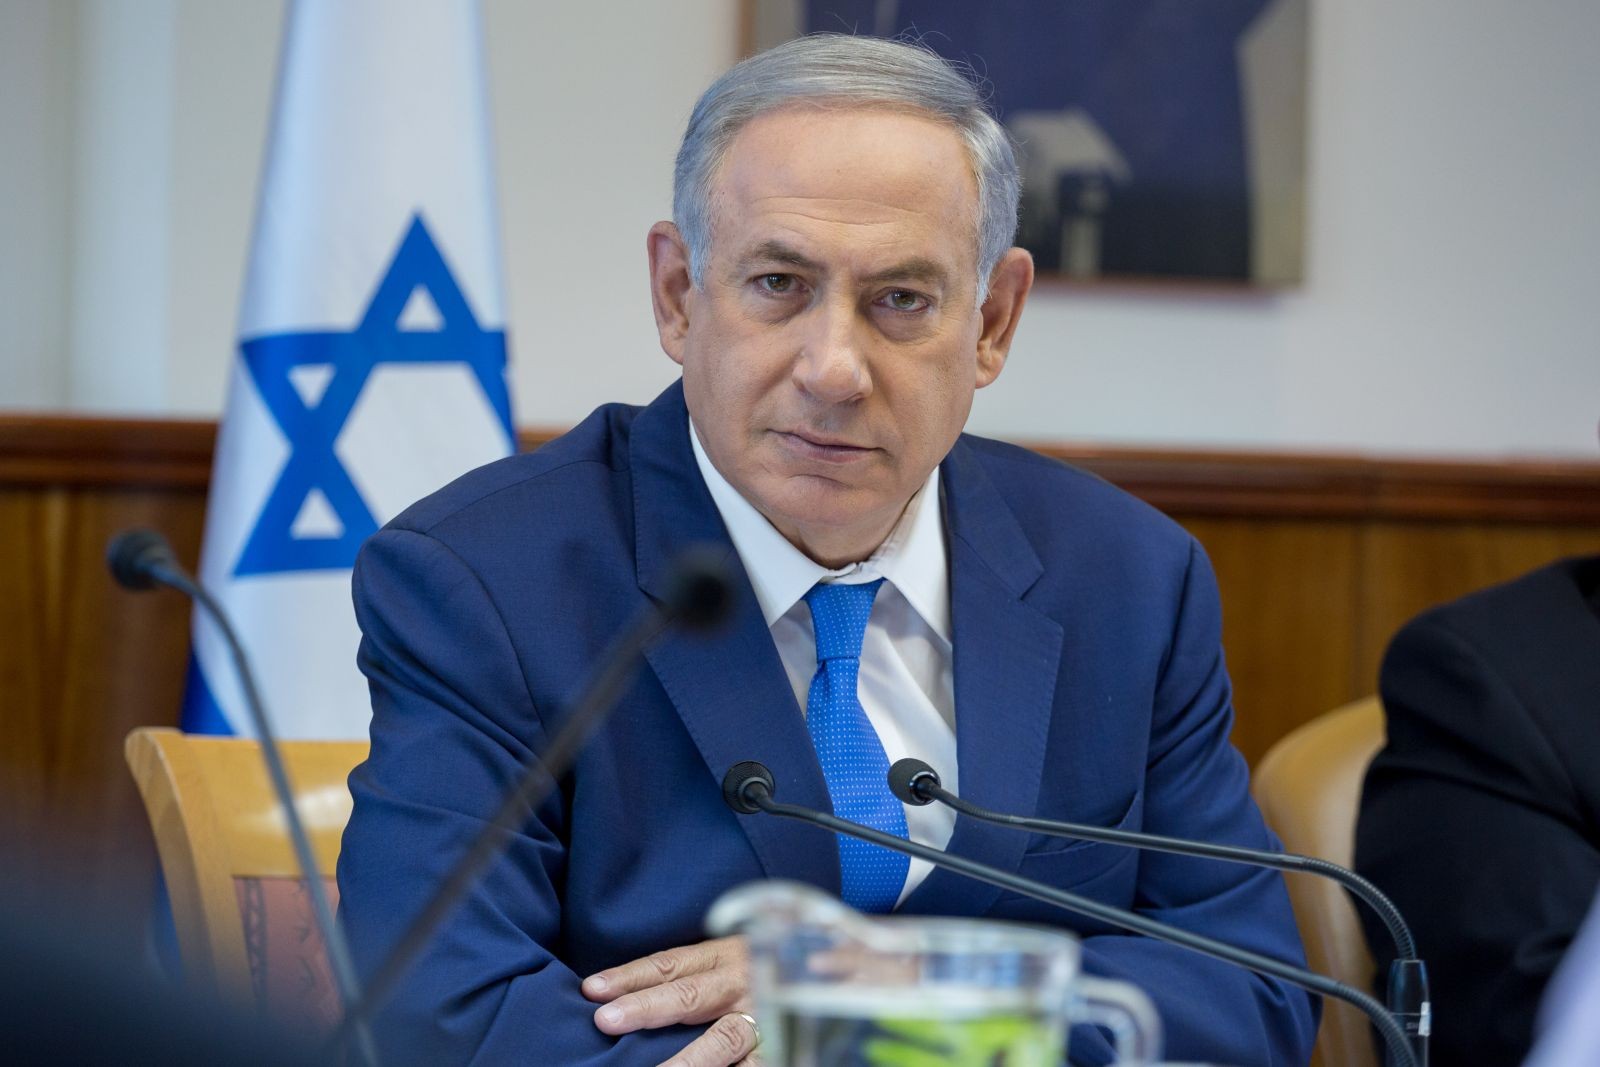 بنيامين نتنياهو رئيس الحكومة الإسرائيلية